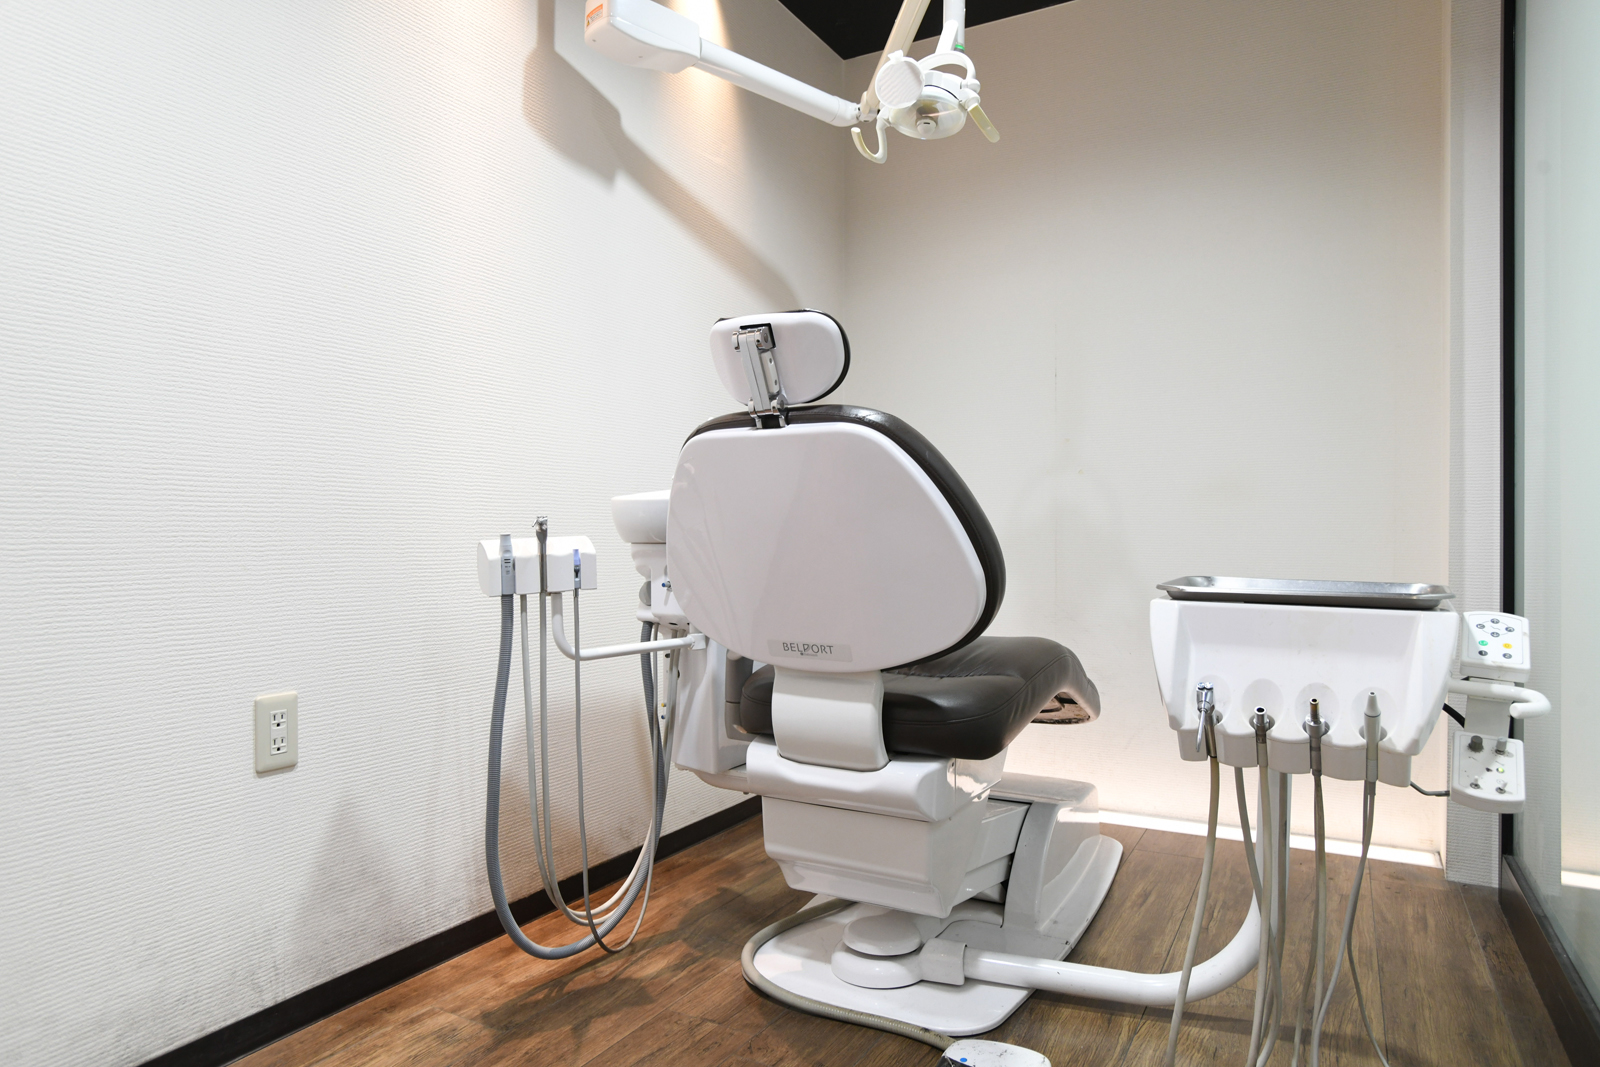 ボロボロの歯の治療を行う個室空間